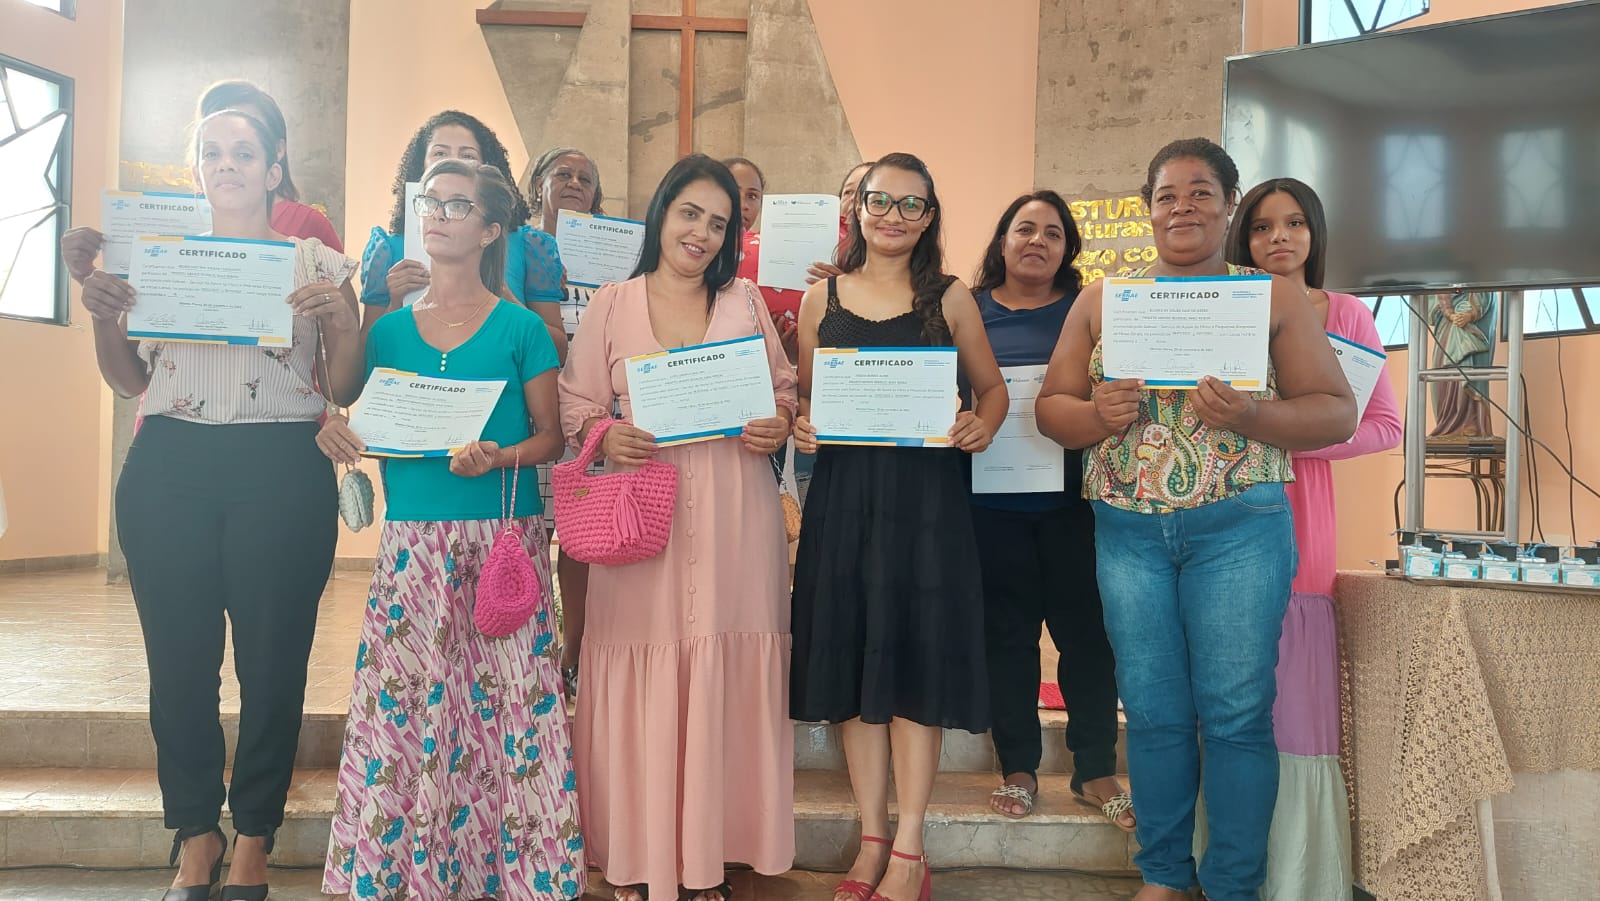 Mulheres atendidas pela Associação Paula Elizabete concluem curso de empreendedorismo, crochê e corte e costura